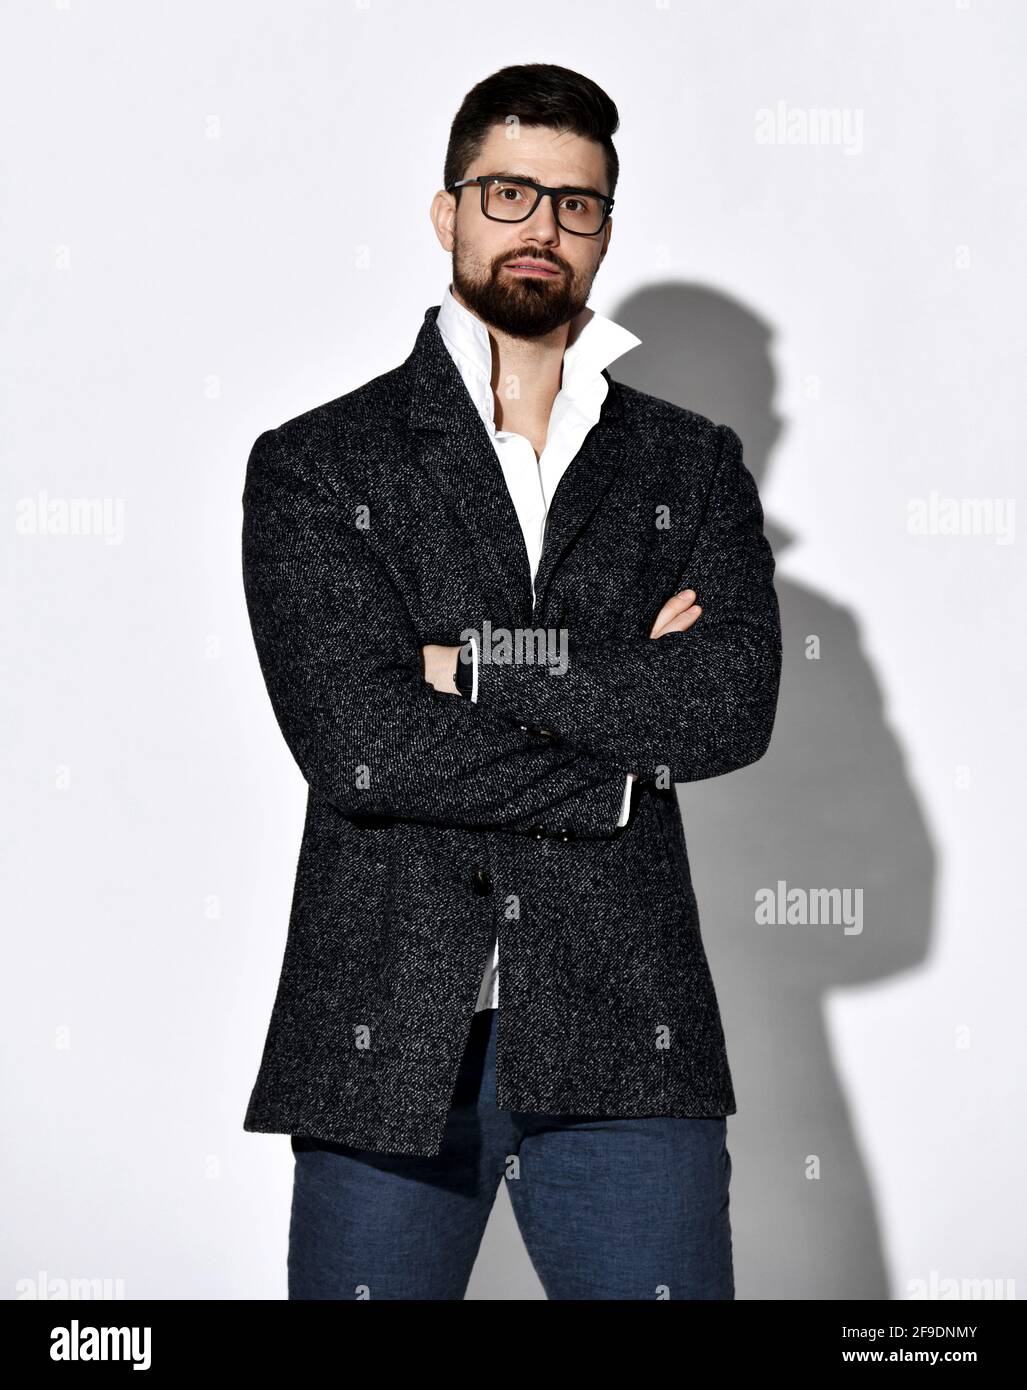 Hombre joven con barba y estilo seguro de sí mismo con gafas y tweed la chaqueta está de pie con las manos cruzadas en el pecho Foto de stock